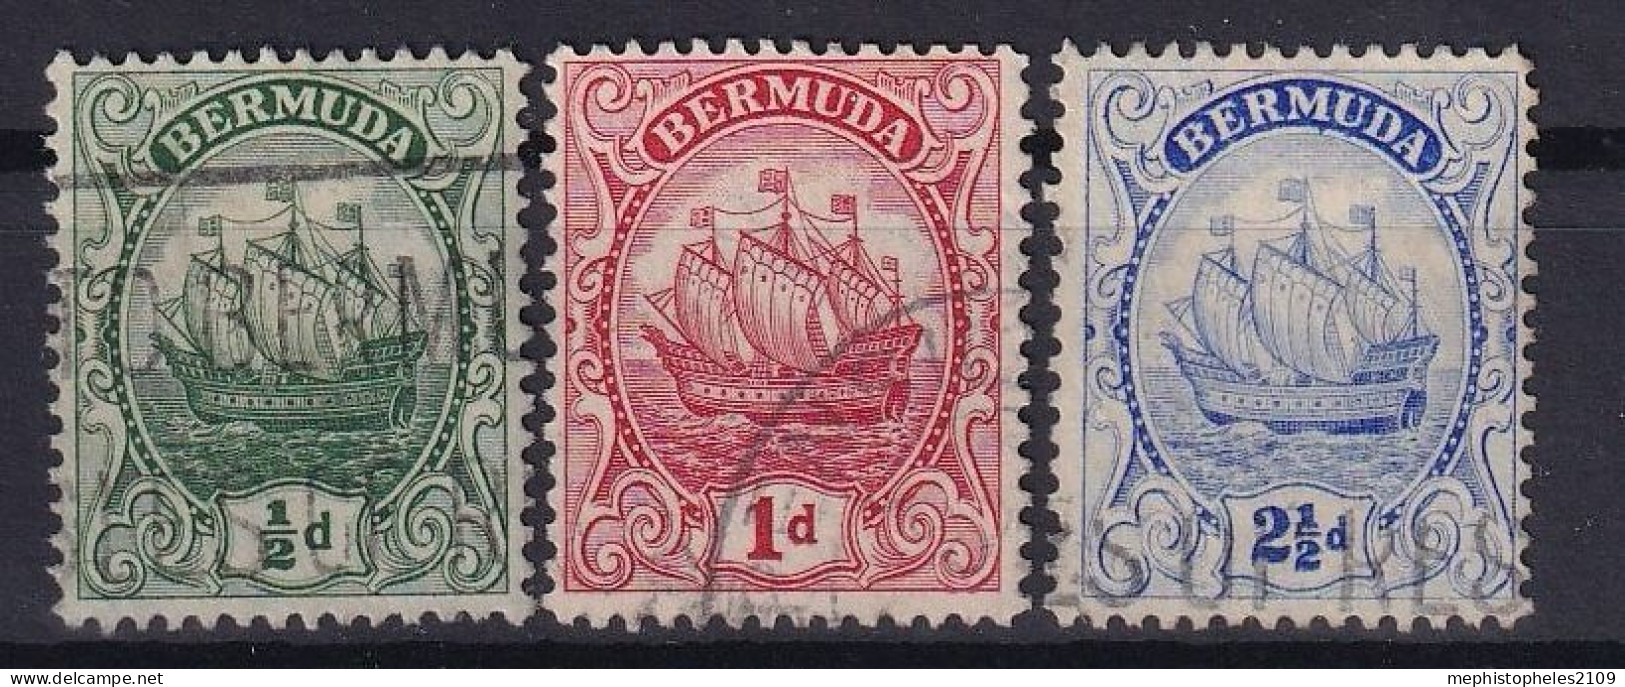 BERMUDA 1922 - Canceled - Sc# 82, 83, 87 - Bermudas